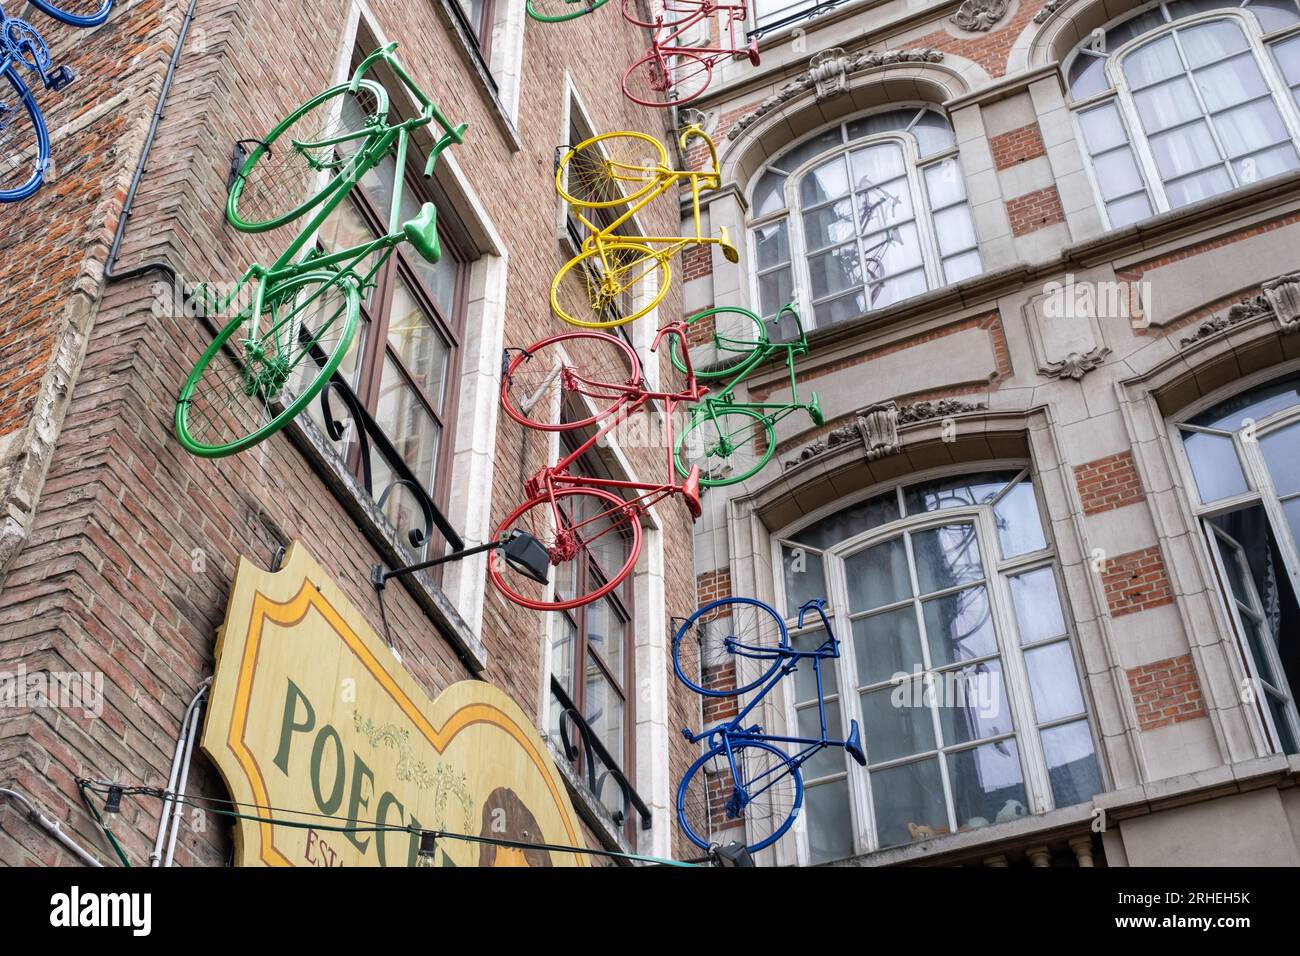 Bruxelles, Belgique - 10 septembre 2022 : des vélos colorés sur la façade de Poechenellekelder Banque D'Images